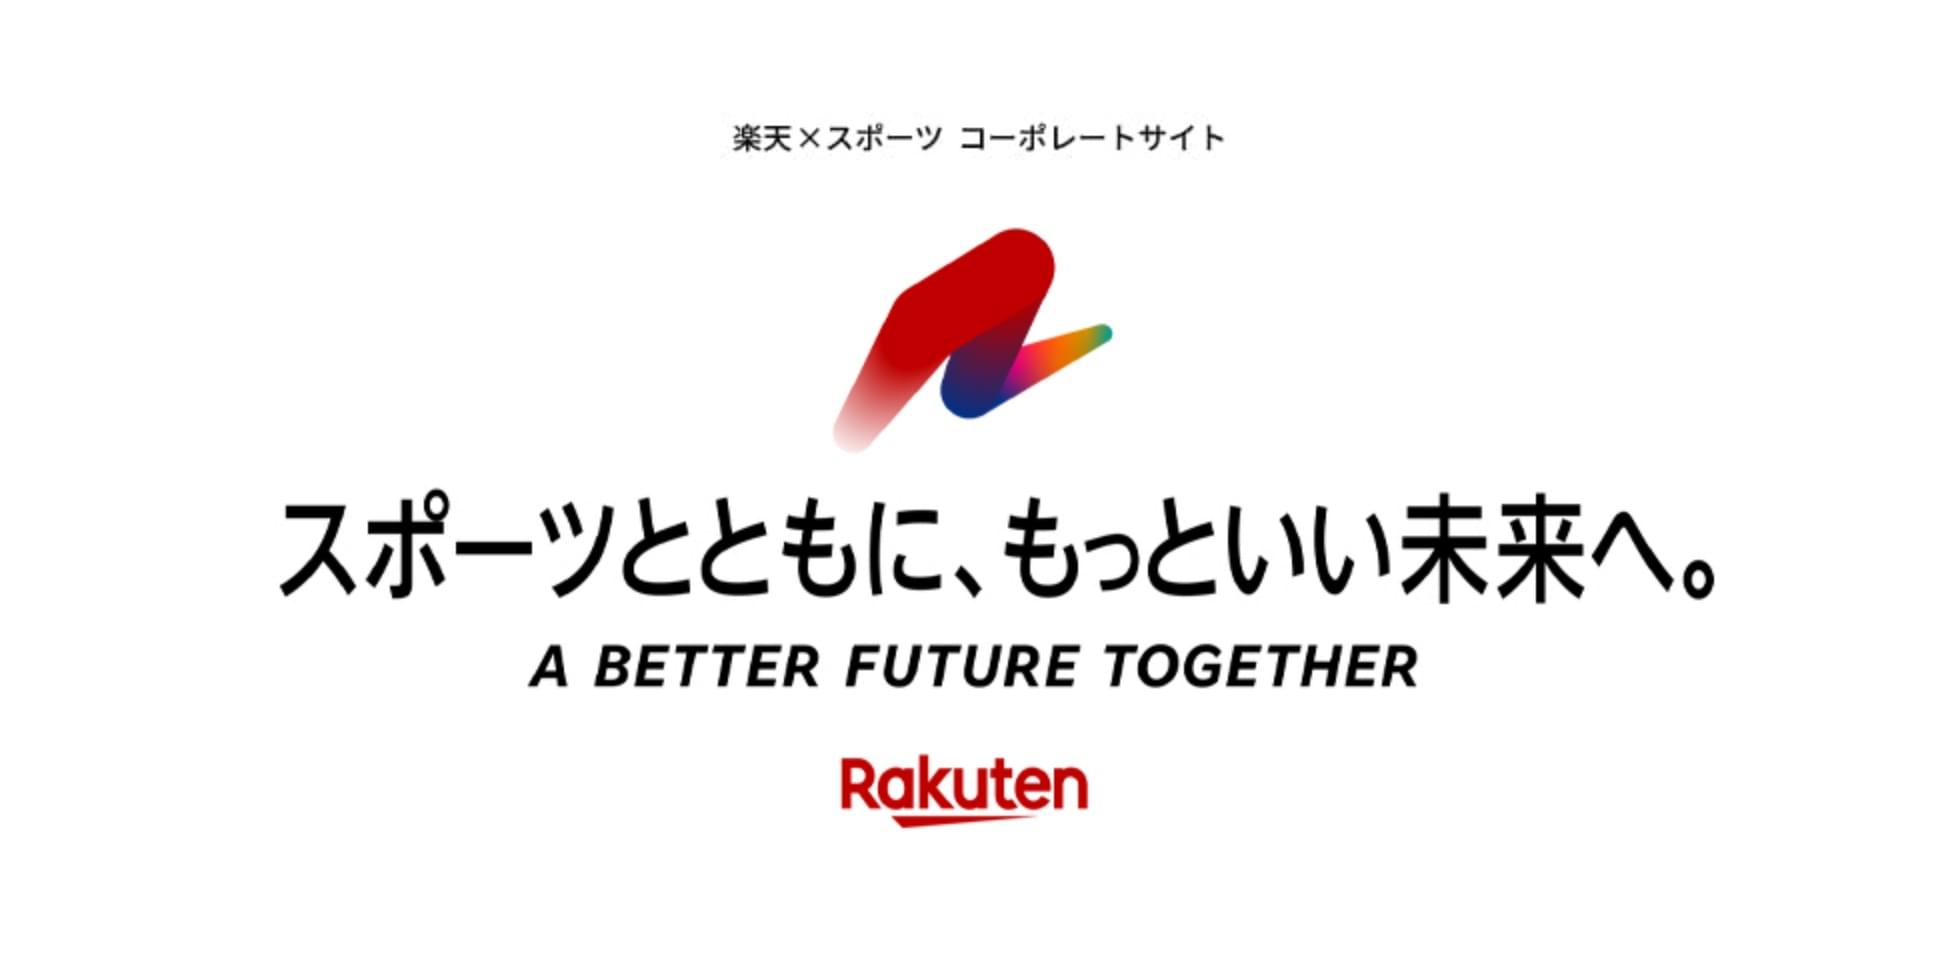 スポーツとともに、もっといい未来へ。 - A Better Future Together Rakuten